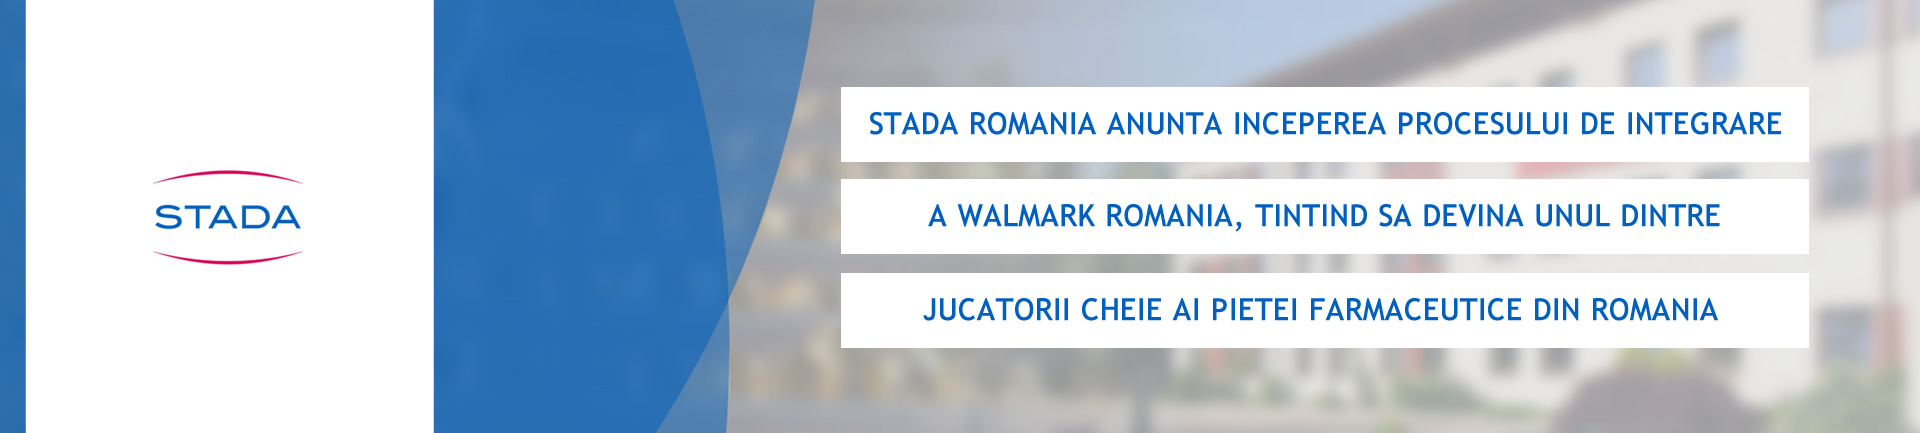 STADA Romania anunta inceperea procesului de integrare a Walmark Romania, tintind sa devina unul dintre jucatorii cheie ai pietei farmaceutice din Romania